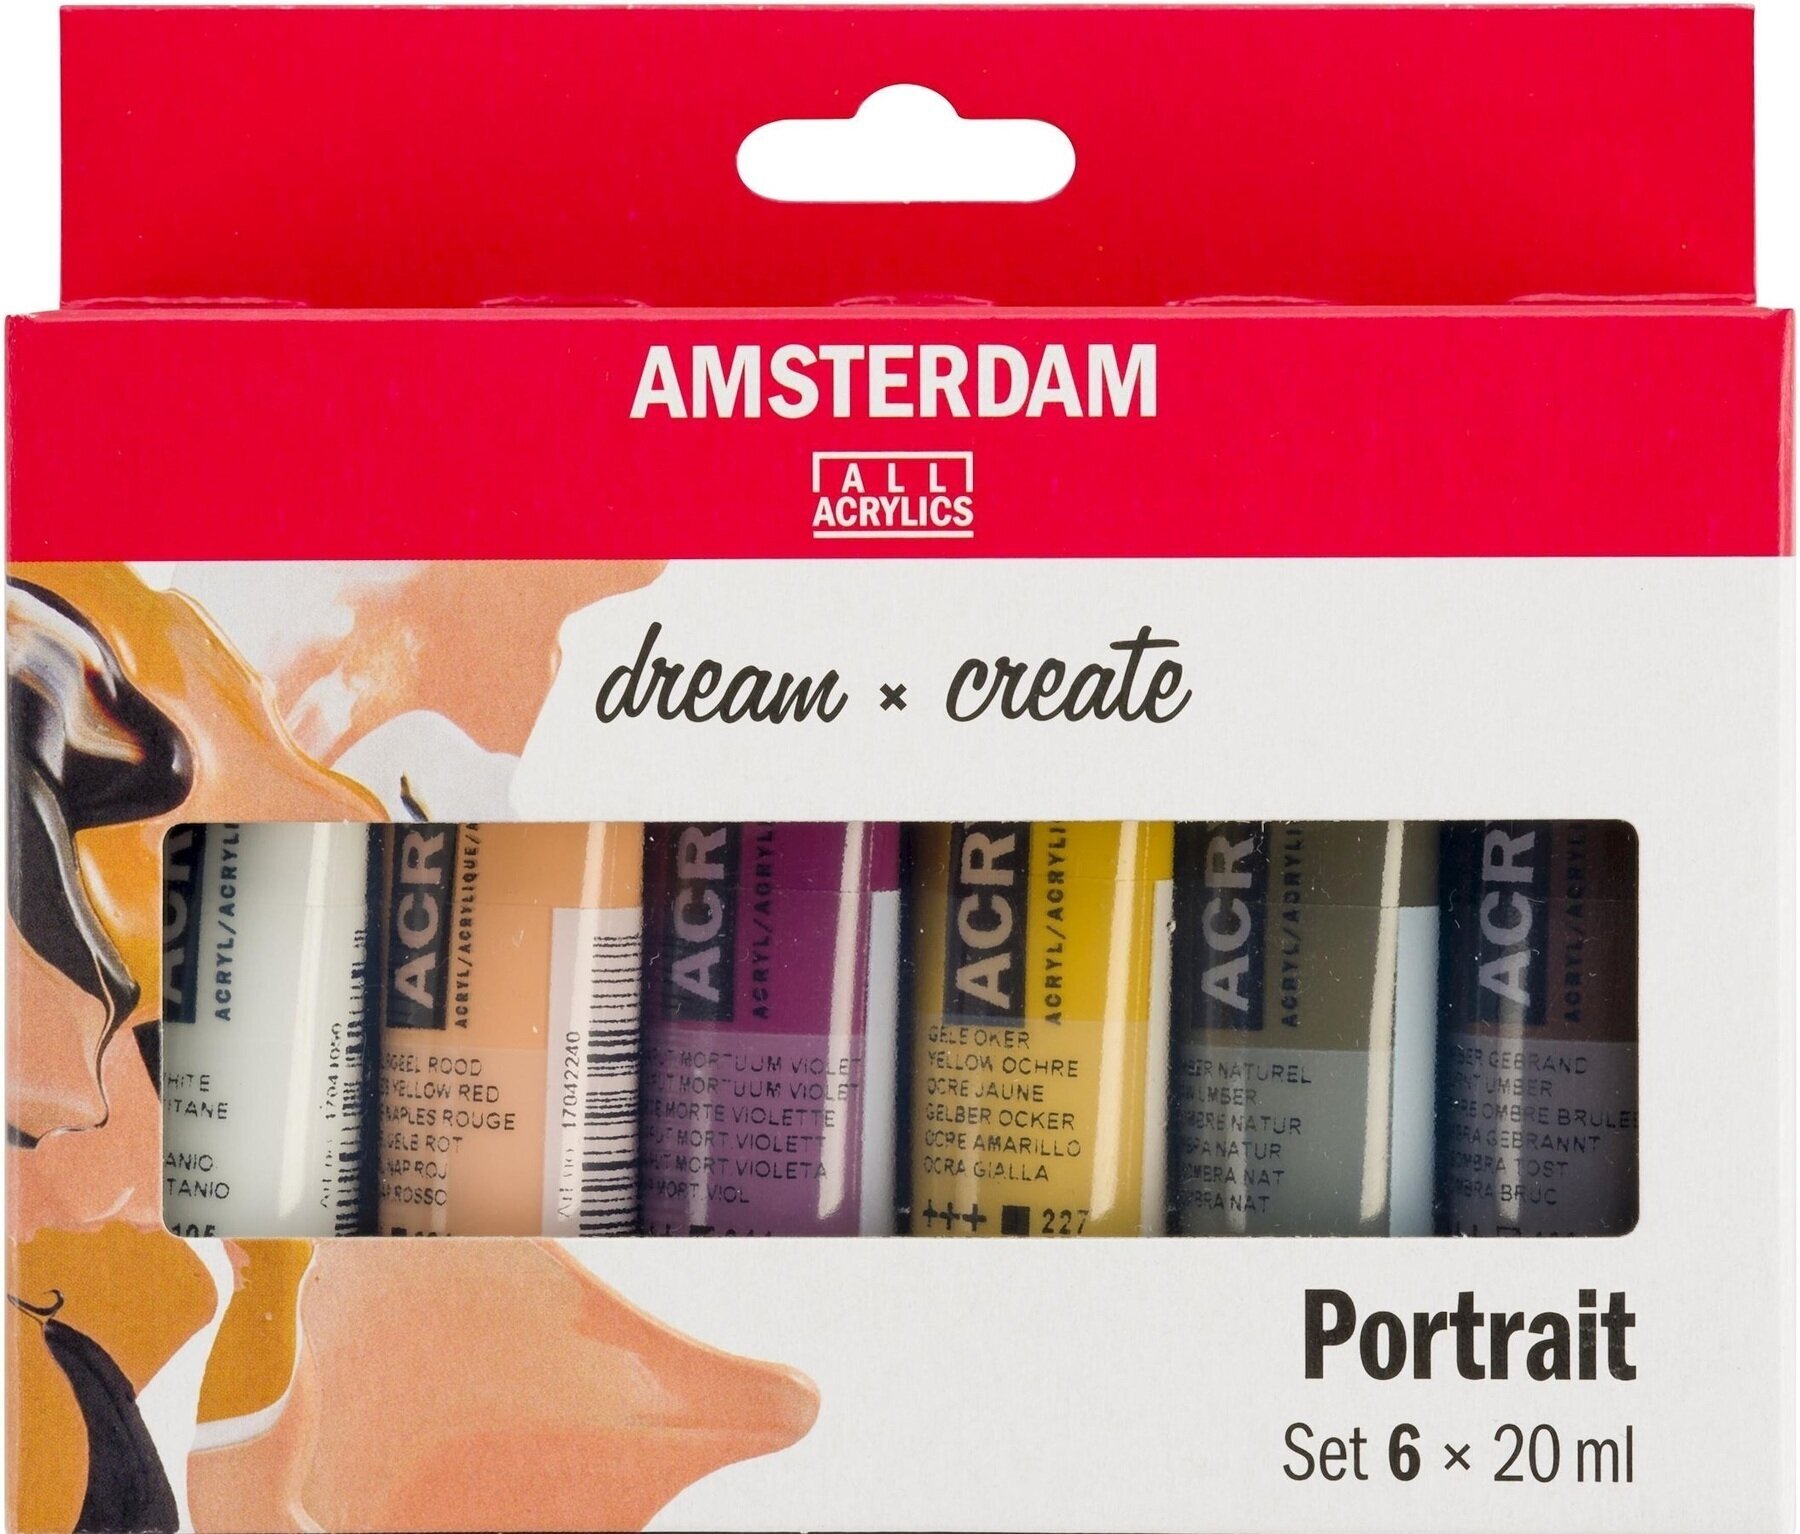 Acrylic Paint Amsterdam Set of Acrylic Paints 6x20 ml Portrait Colors